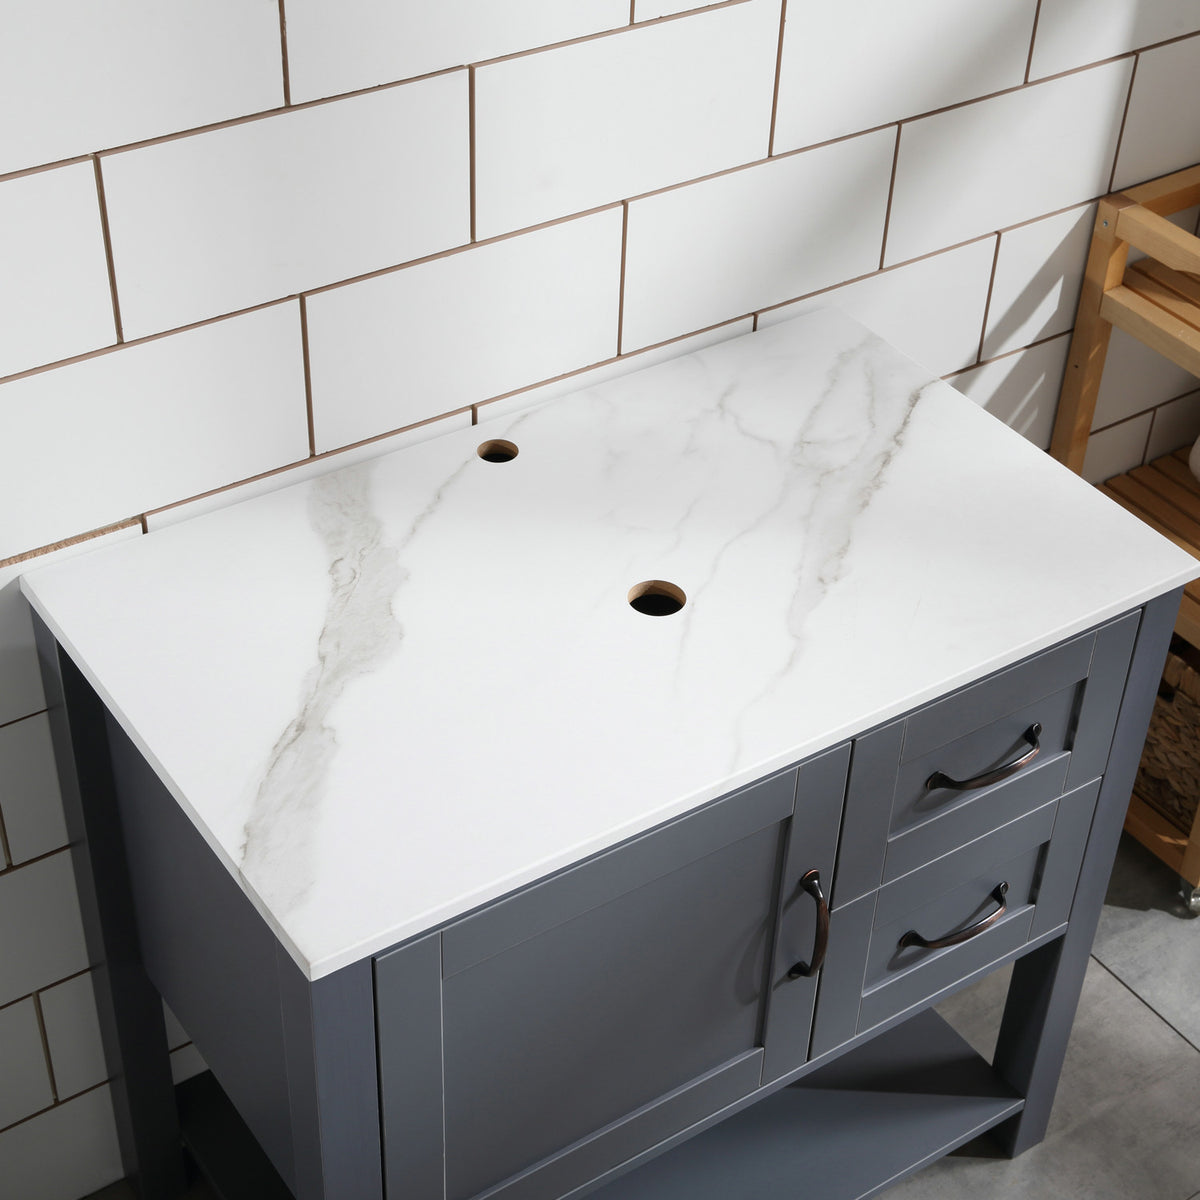 30" Gray Bathroom Vanity w/ Marble Pattern Top